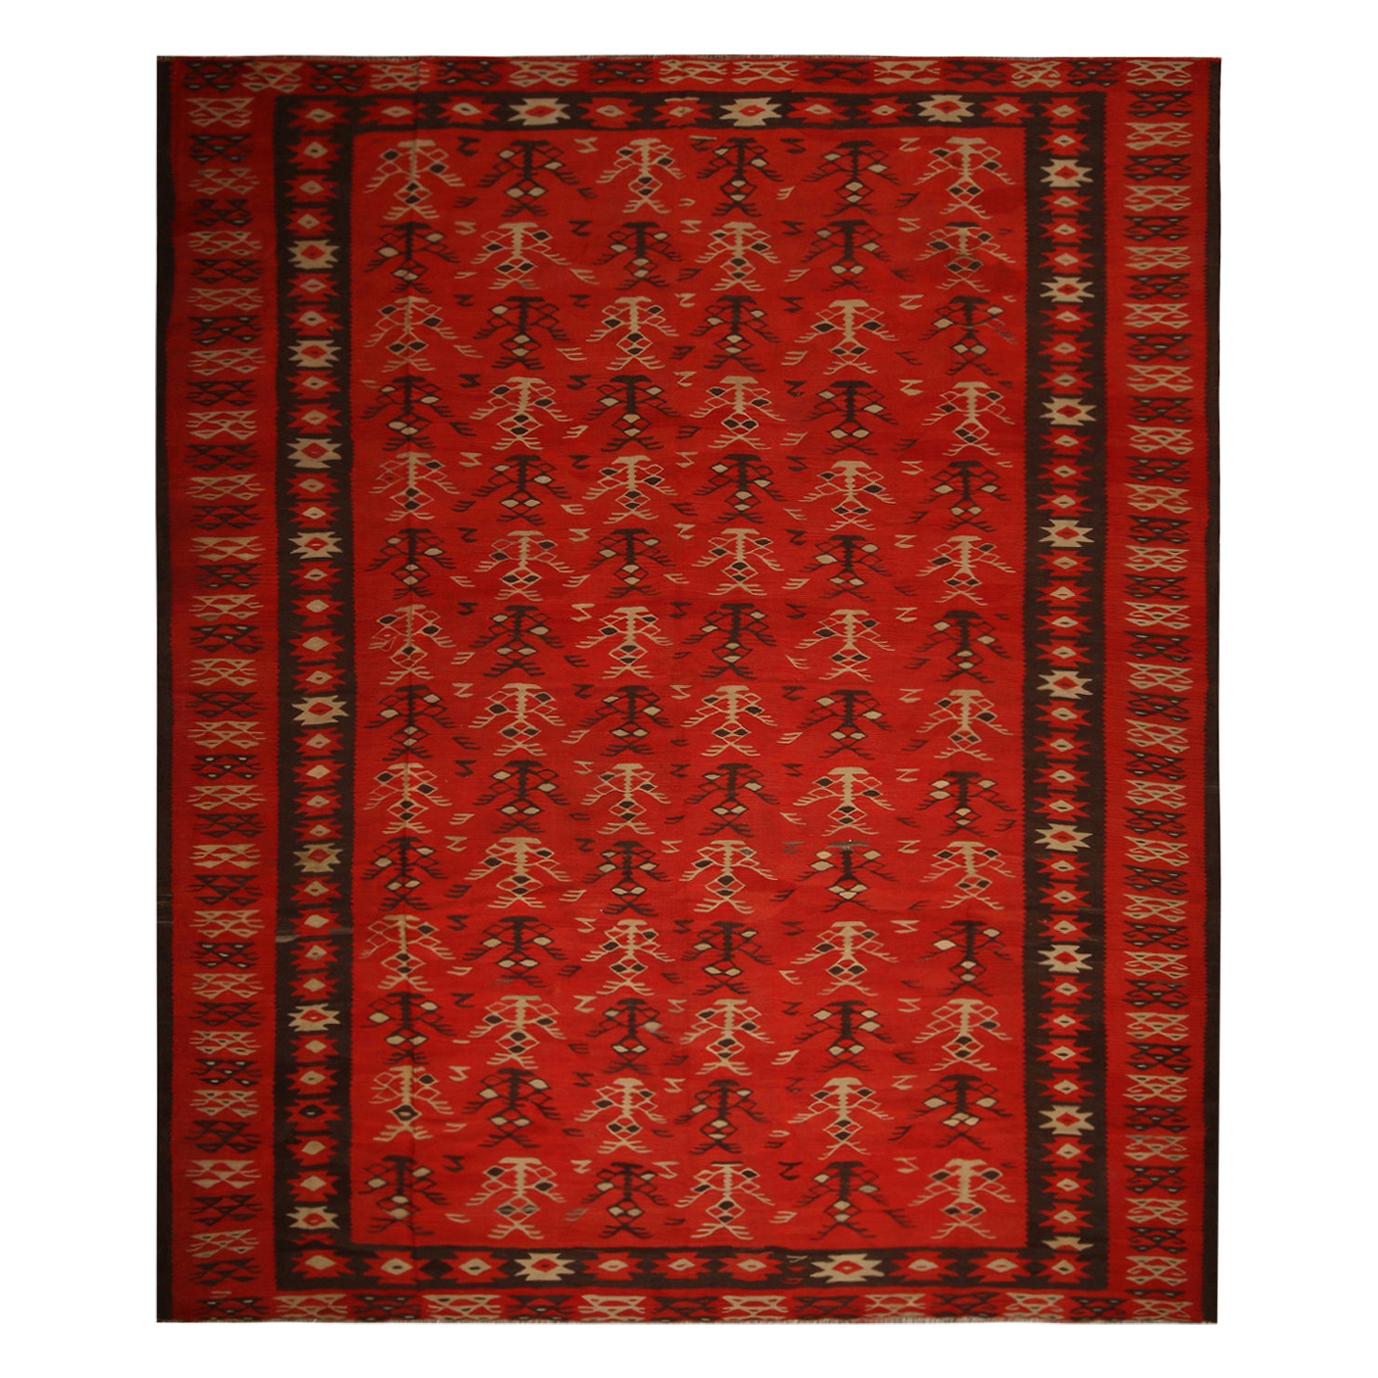 Handgewebter Vintage-Stammes-Kelim in Rot-Braun mit geometrischen Mustern von Teppich & Kelim